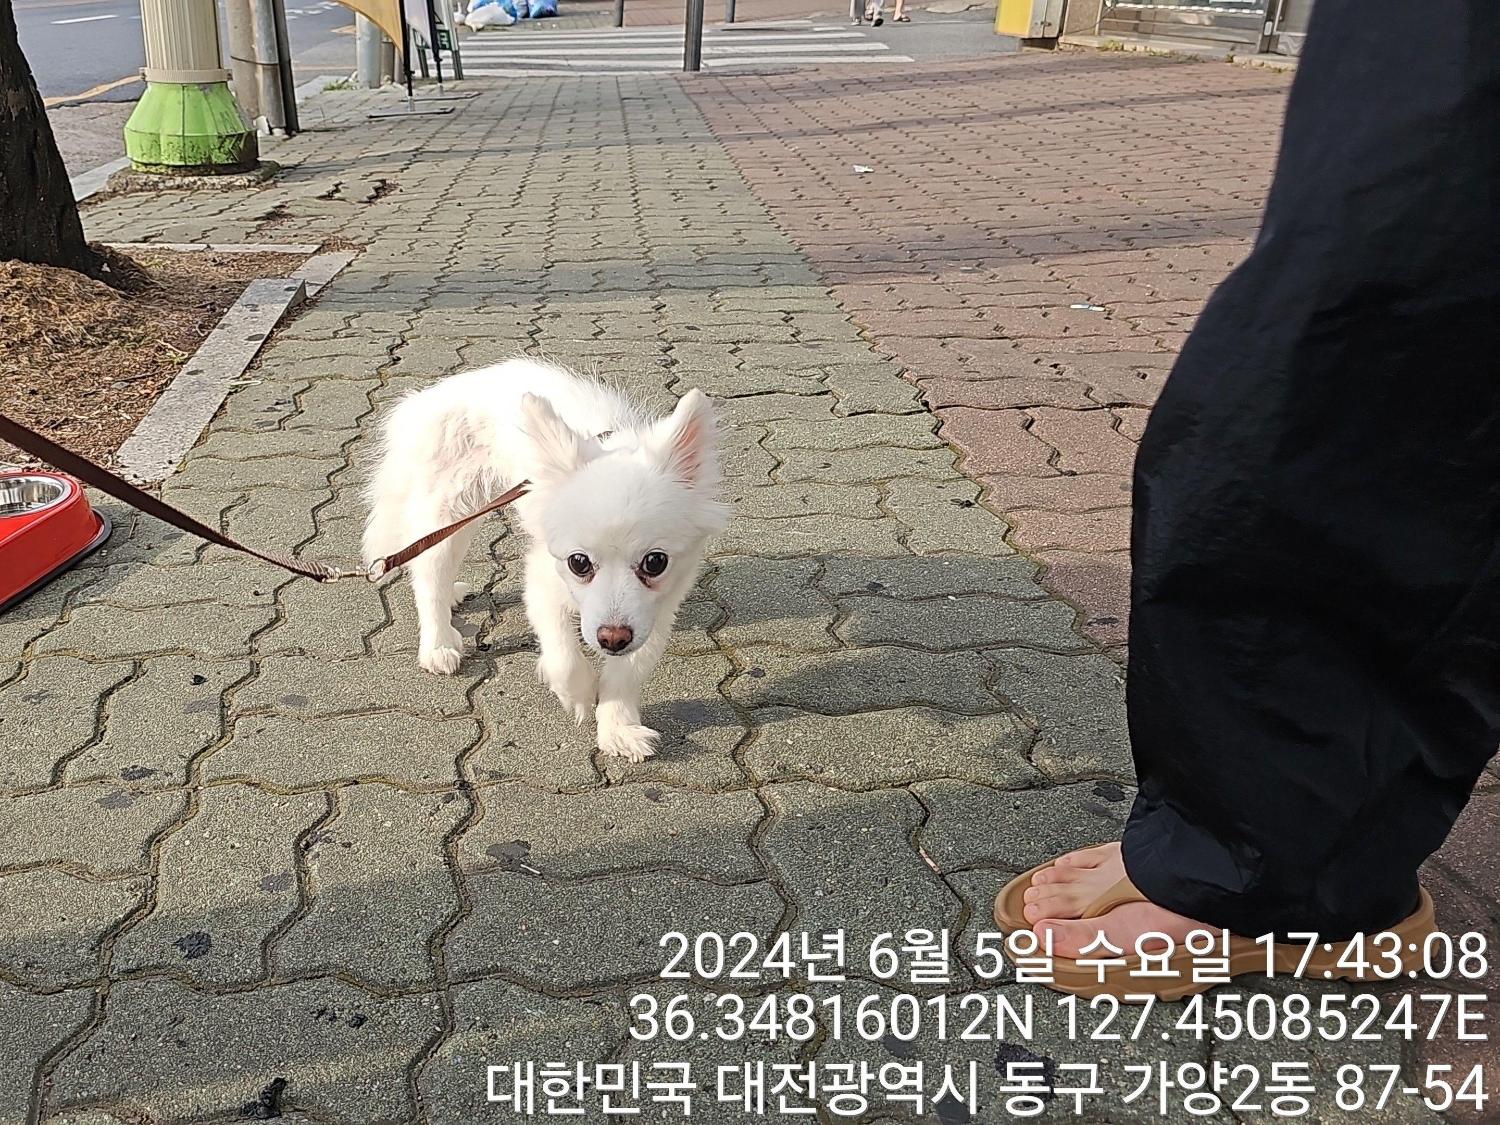 공고 번호가 대전-동구-2024-00156인 스피츠 동물 사진  